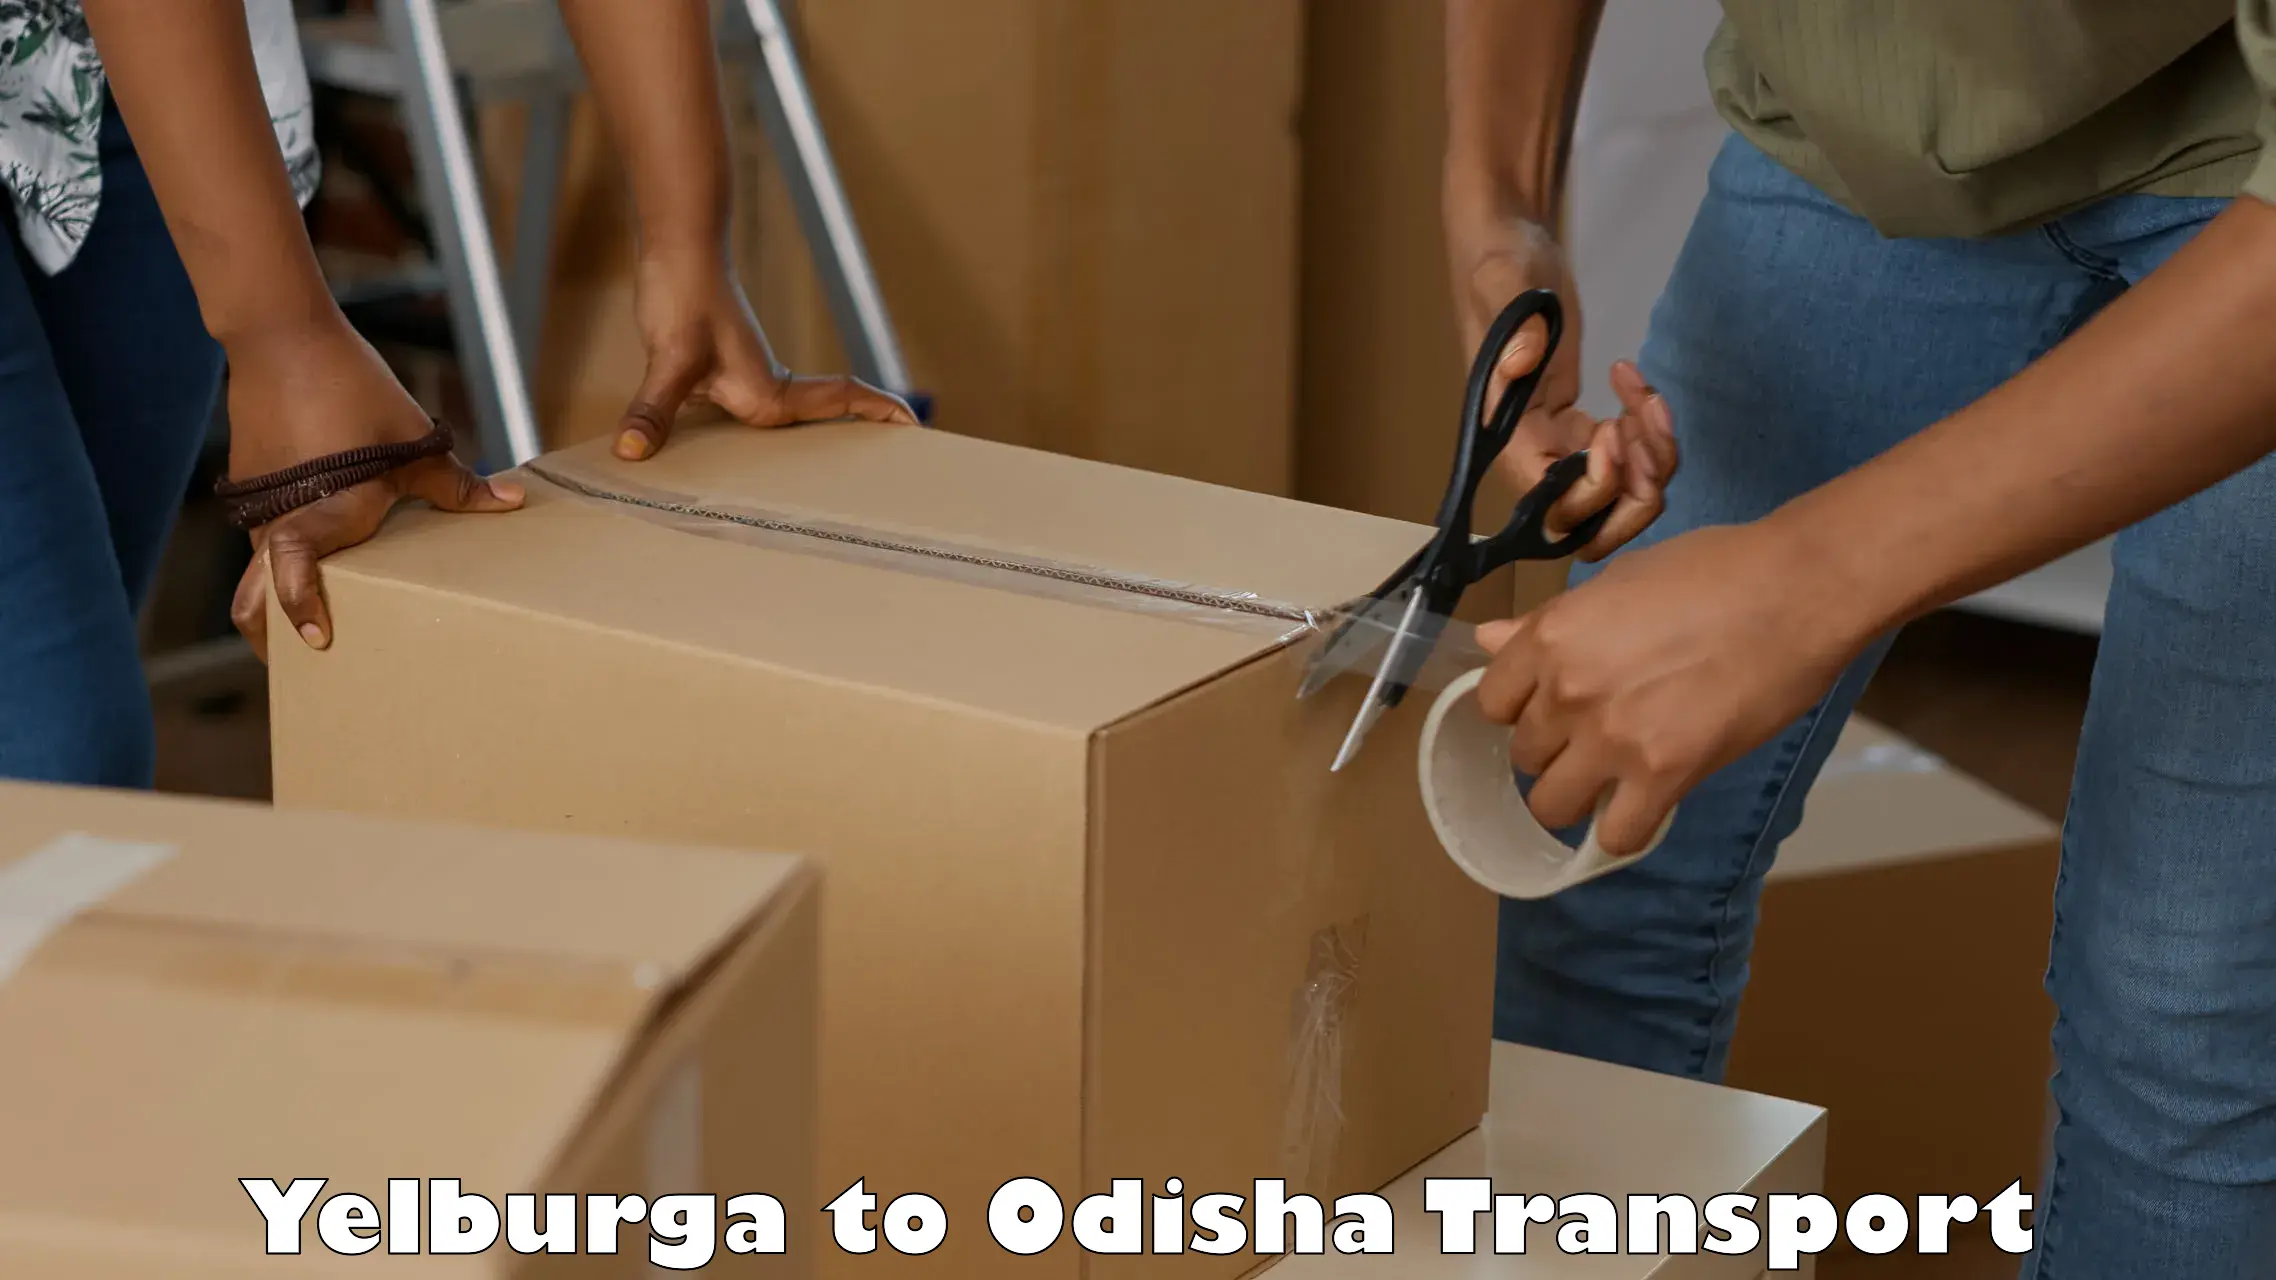 Daily transport service in Yelburga to Bhubaneswar